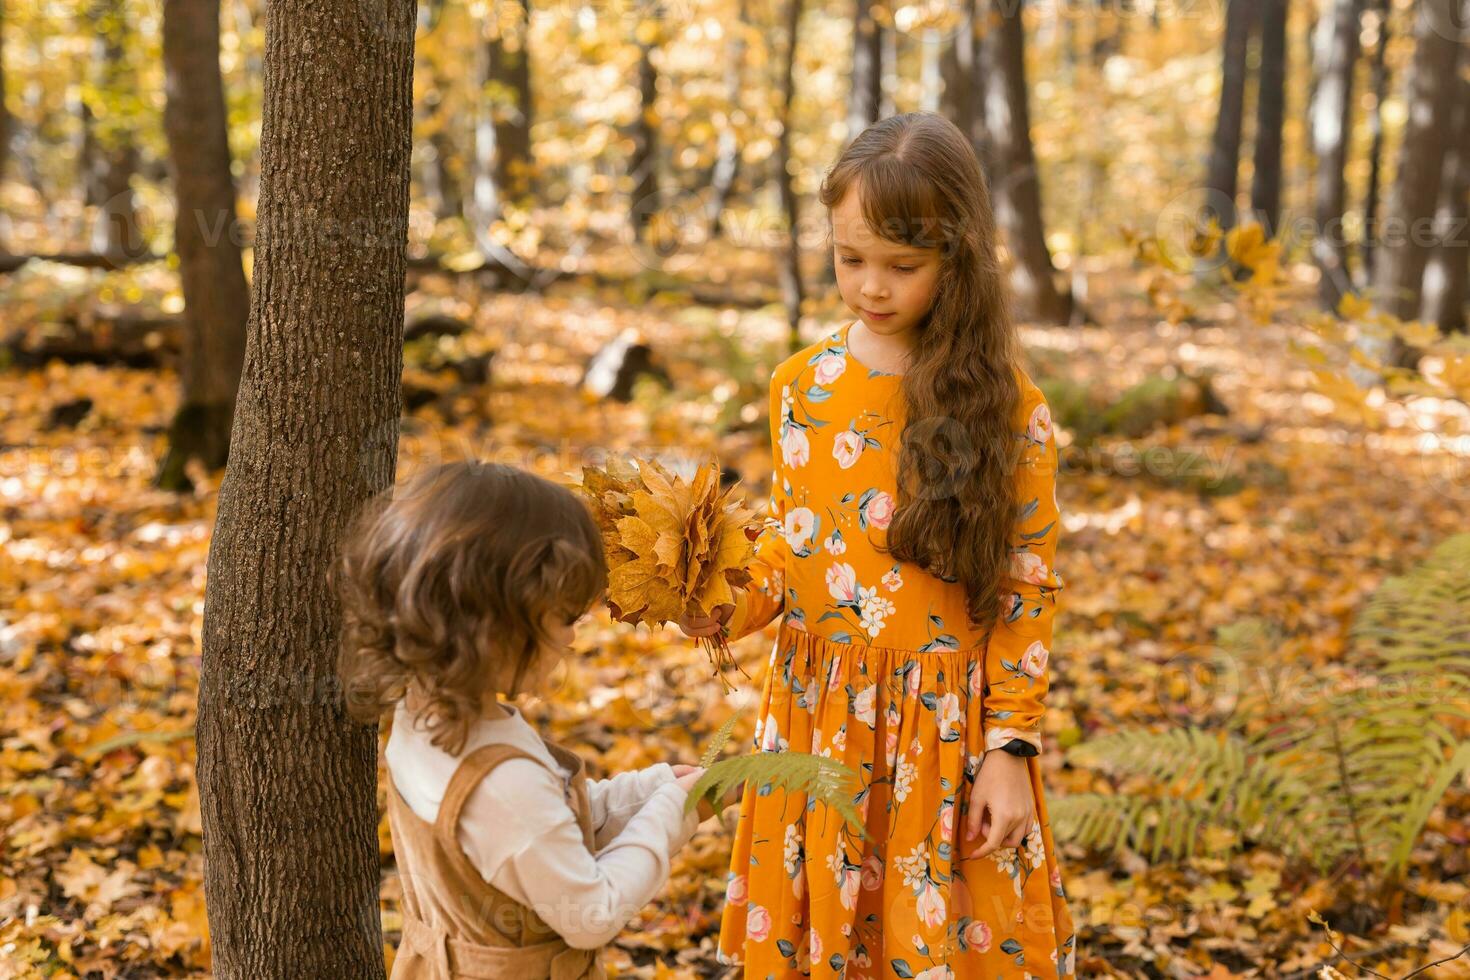 contento niños jugando en hermosa otoño parque en calentar soleado otoño día. pequeño hermanas jugar con dorado arce hojas - divertido, ocio y infancia concepto foto